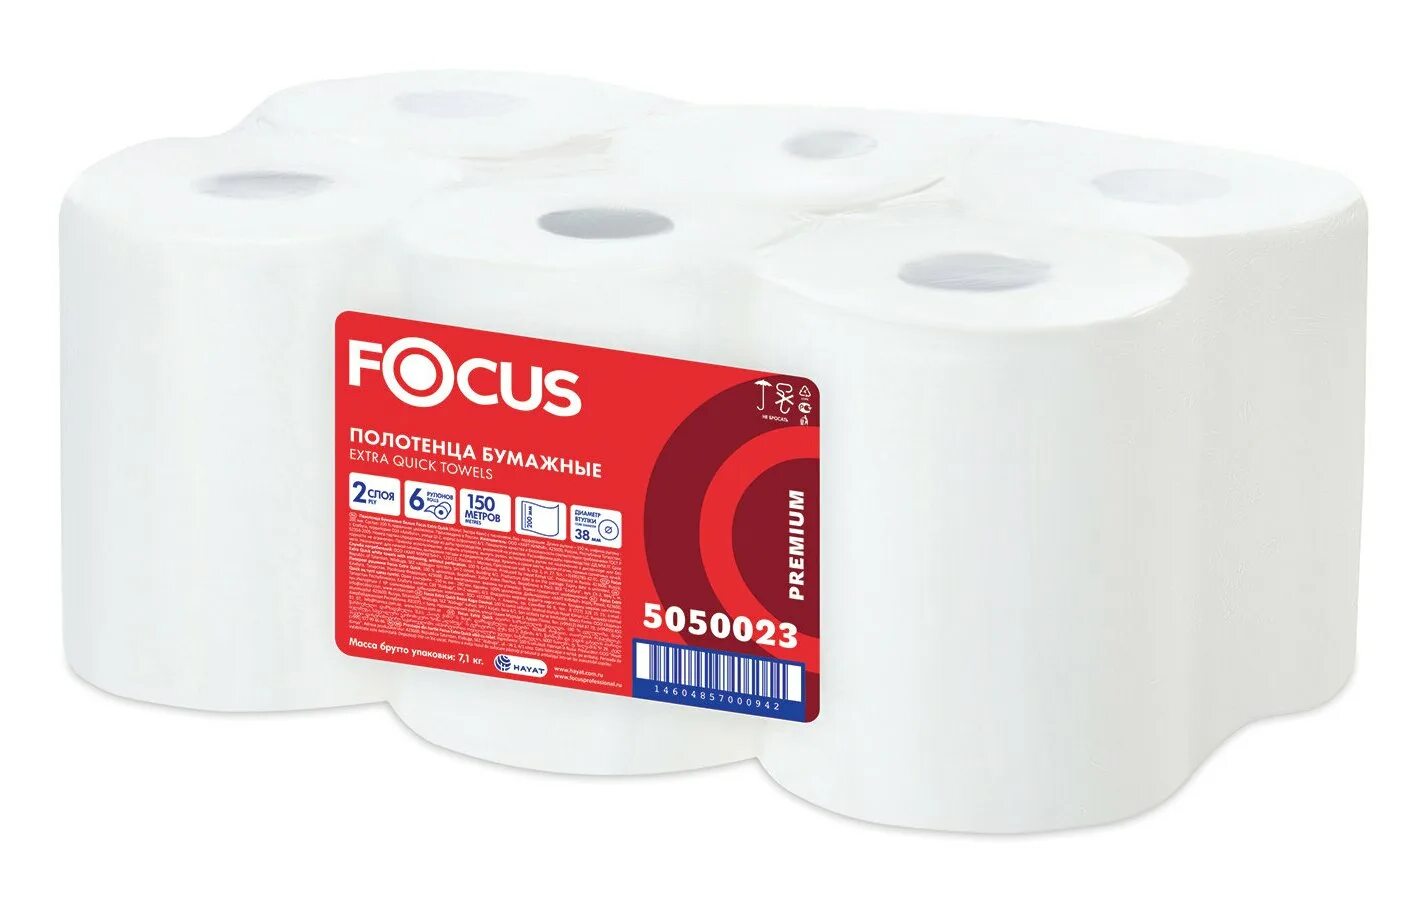 Полотенца бумажные 200 шт. Туалетная бумага Focus Jumbo Mini. Полотенце бумажное 2сл 150м Focus Extra quick. Бумажные полотенца в рулоне 2сл 150м "Focus" /втулка 38мм/ (6шт) 5050023. 5036904 Бумага туалетная Focus Mini Jumbo 2сл.